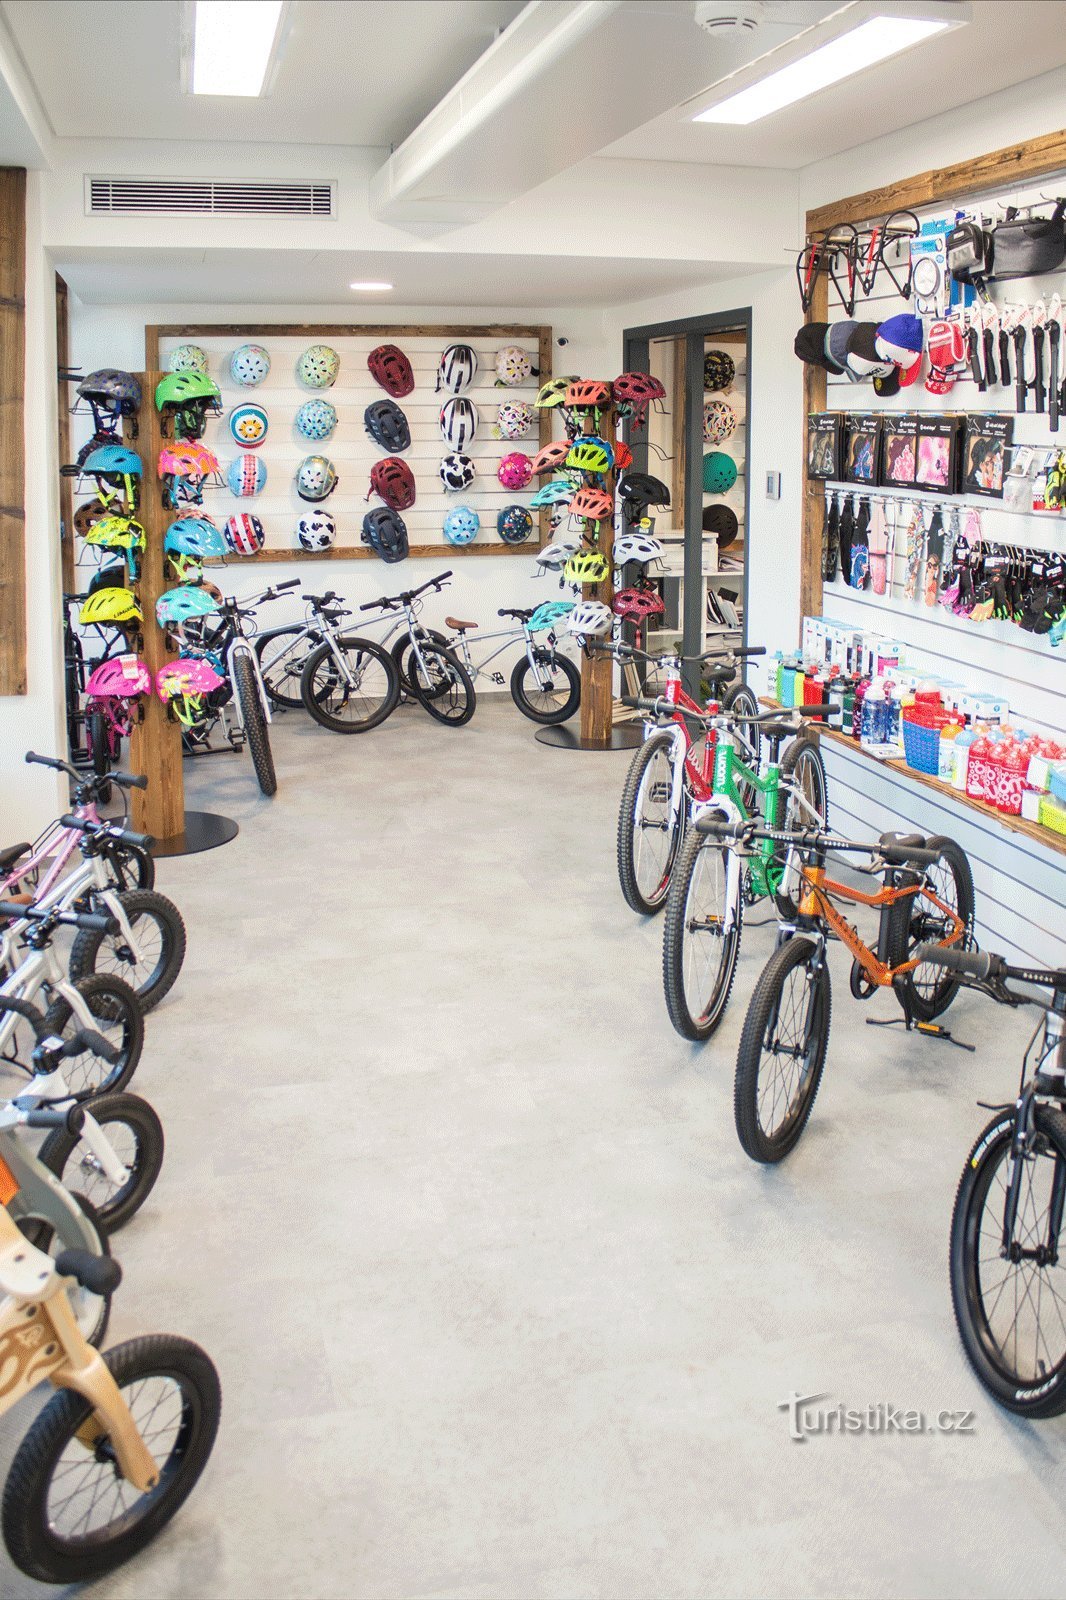 Cửa hàng, dịch vụ và cho thuê xe đạp - Chuyên xe đạp